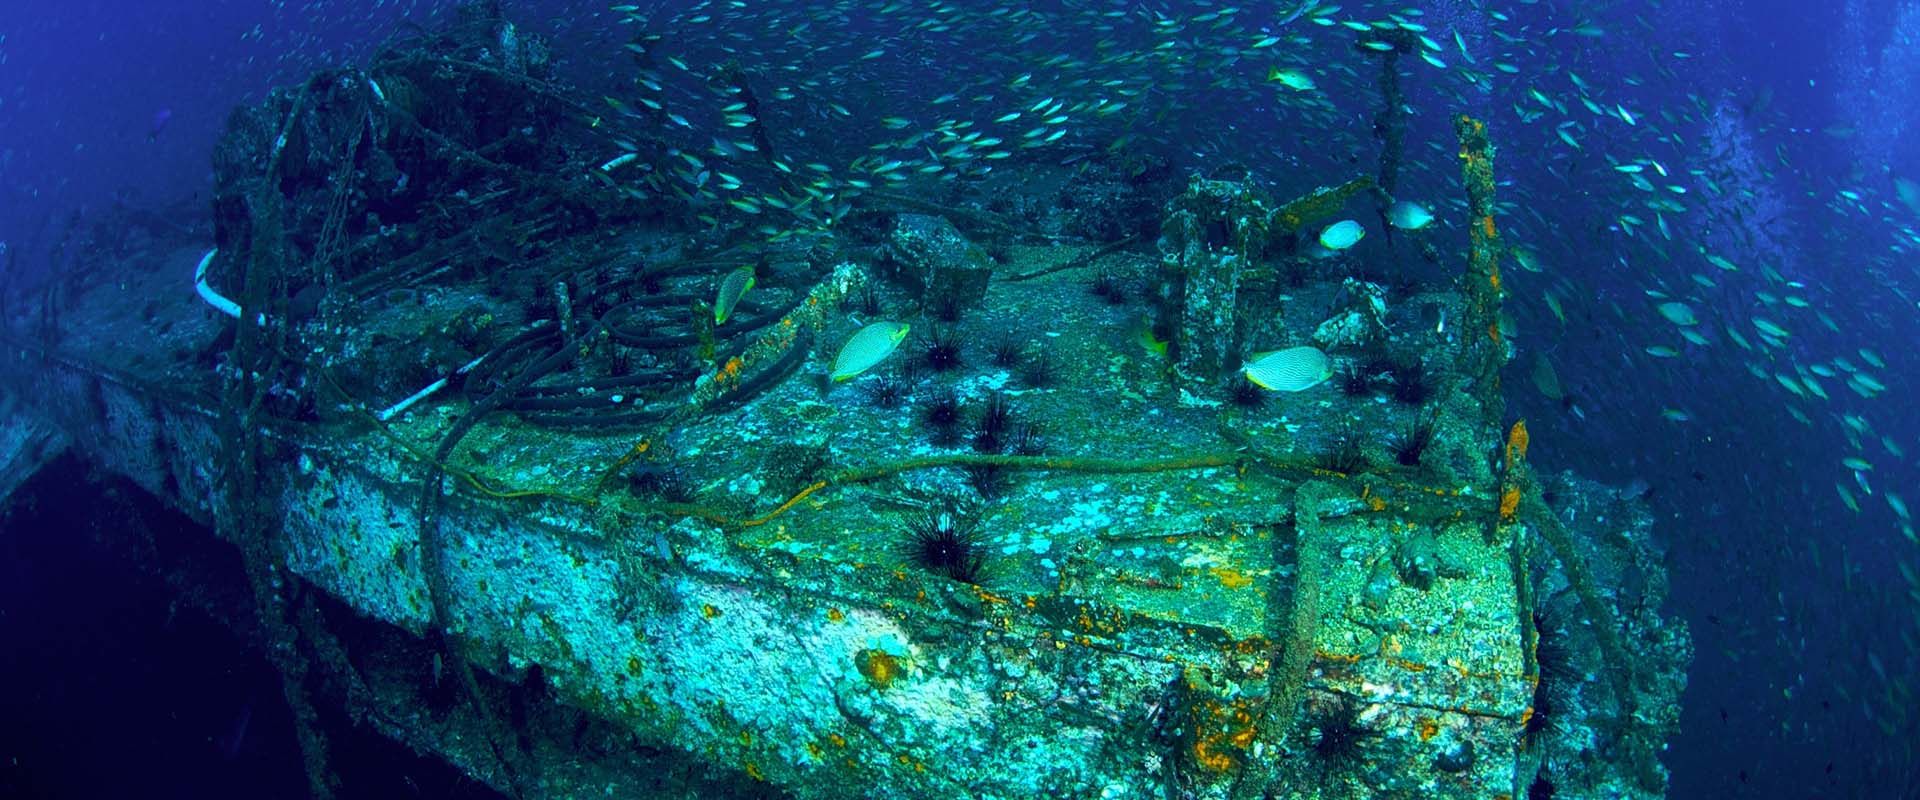 King Cruiser Wreck Liveaboard Diving